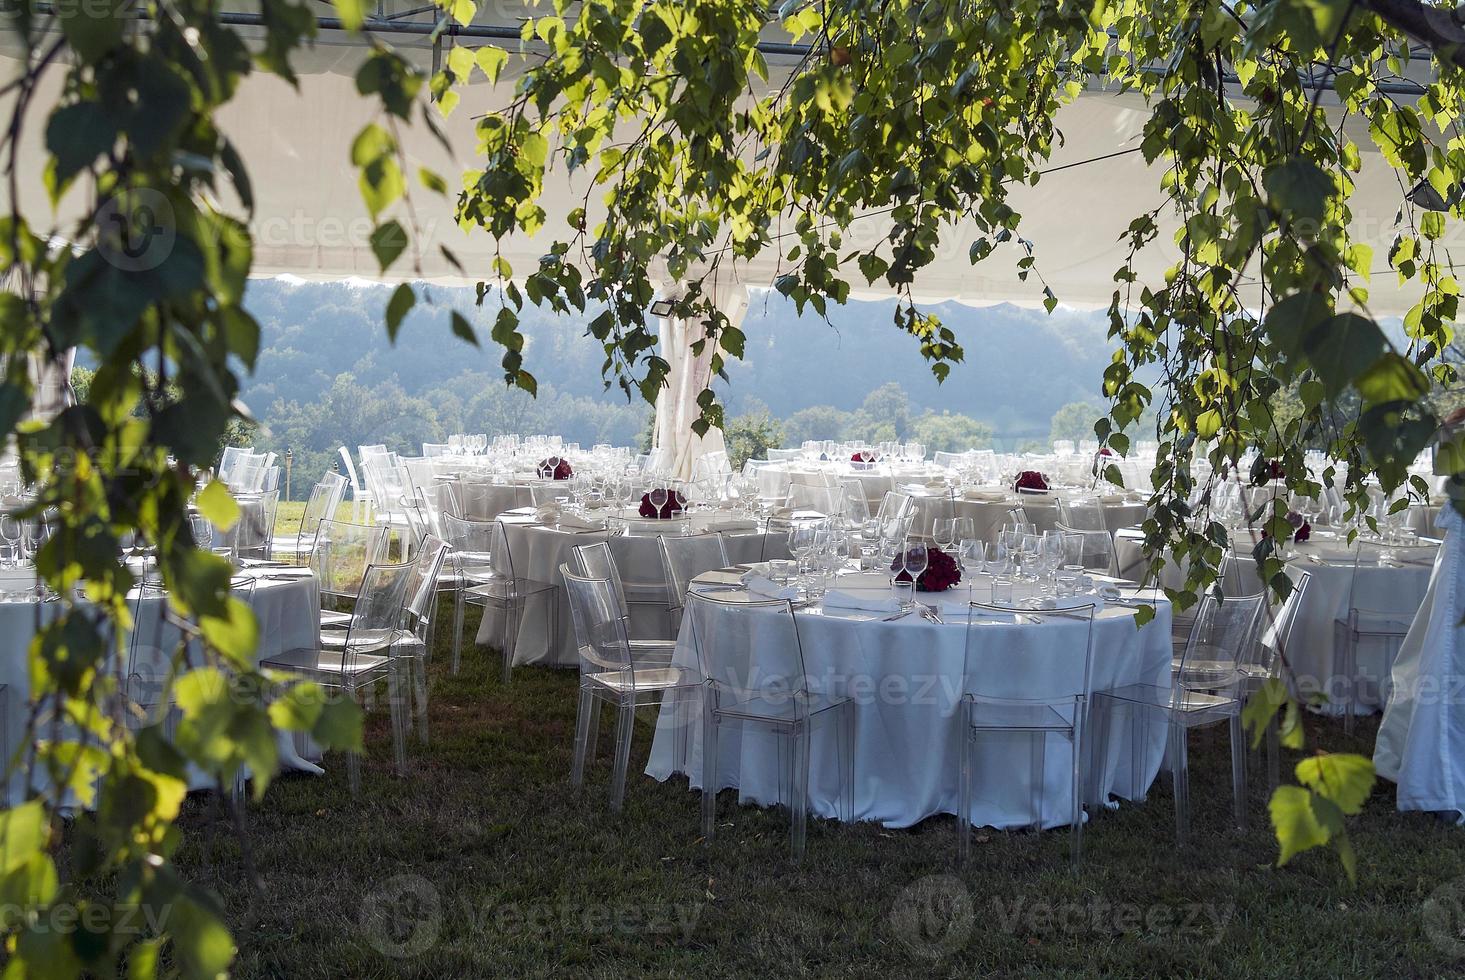 barraca com mesas postas para banquete ao ar livre foto